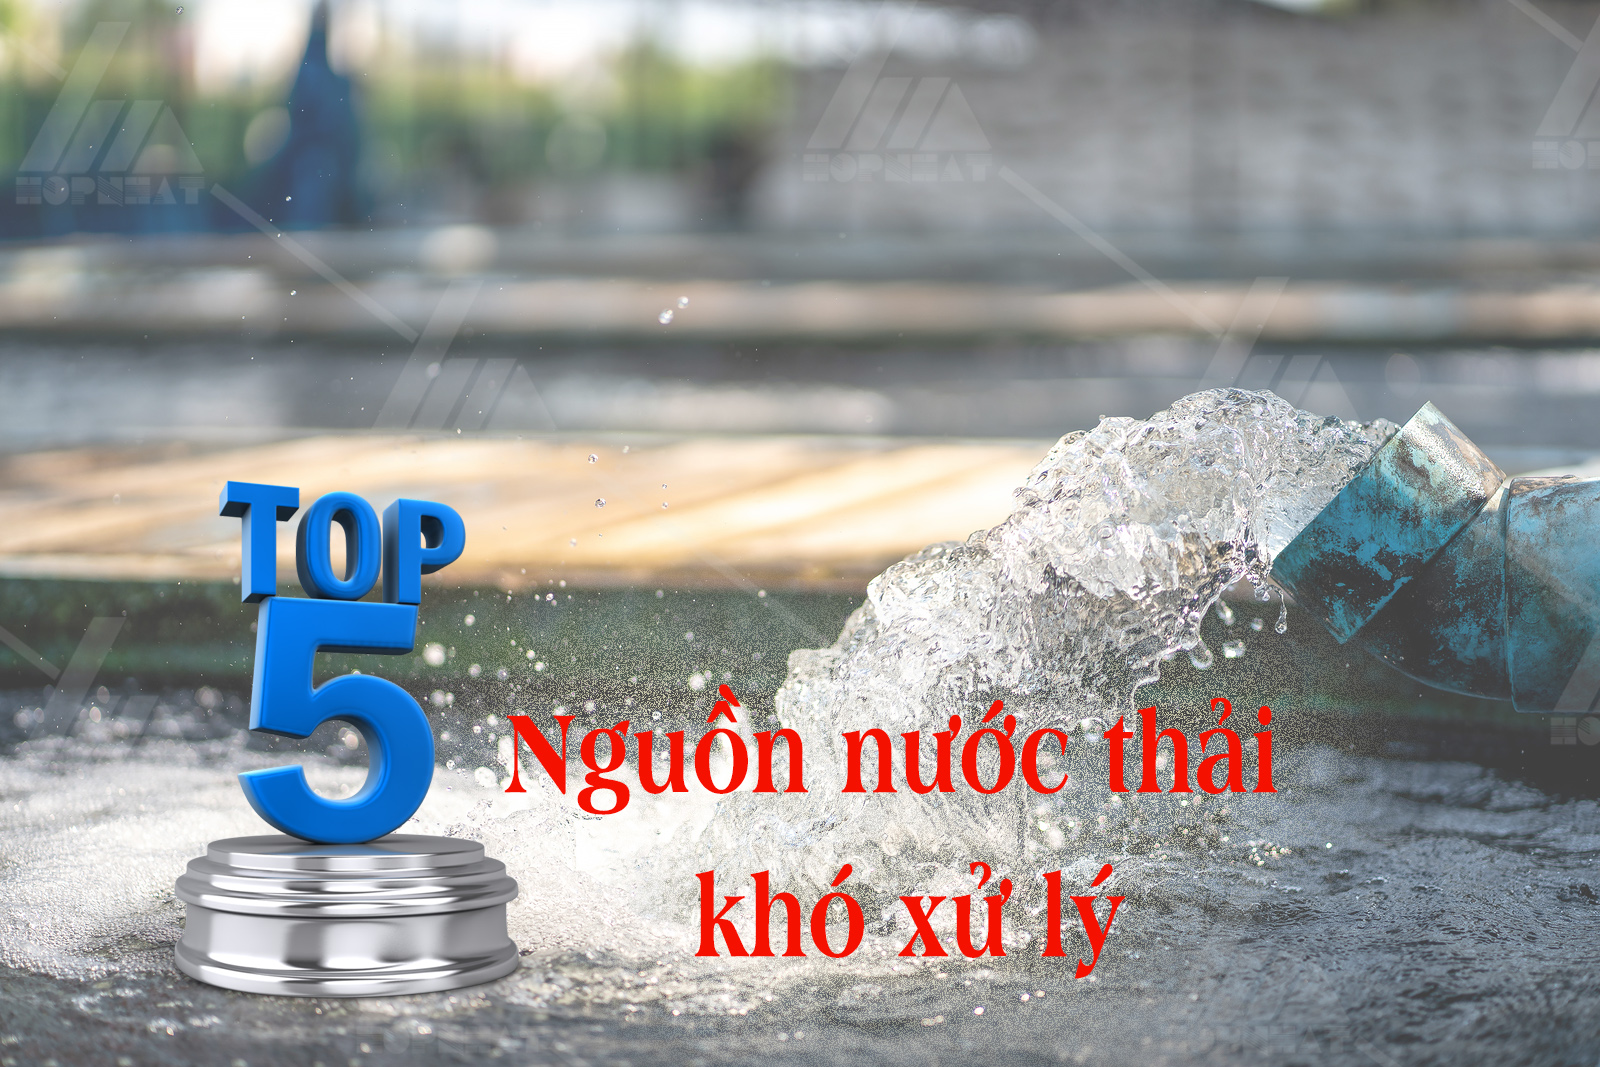 Top 5 nguồn nước thải khó xử lý nhất hiện nay